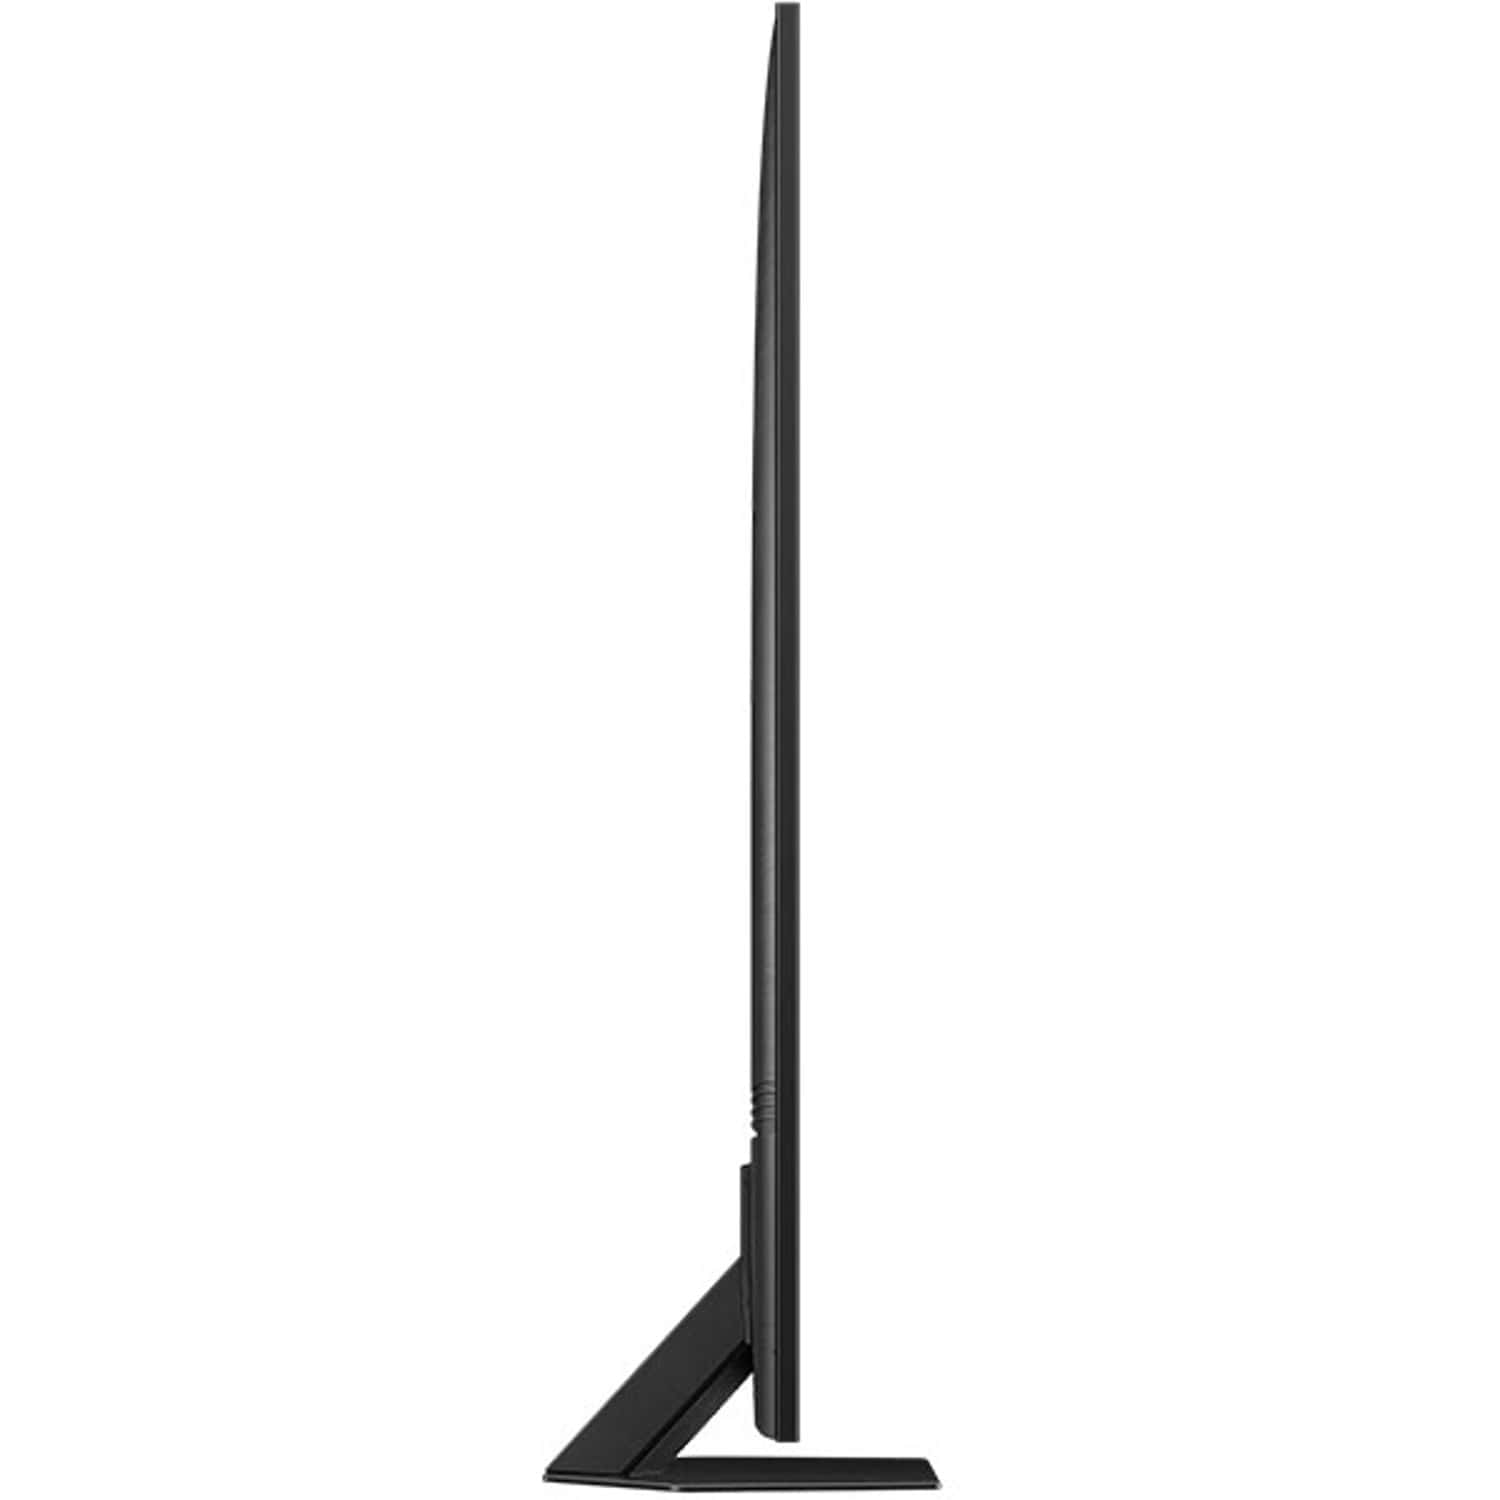 Samsung QLED TV Neo Smart 4K 65 Inch & Samsung MX-T70 1500W Sound Tower